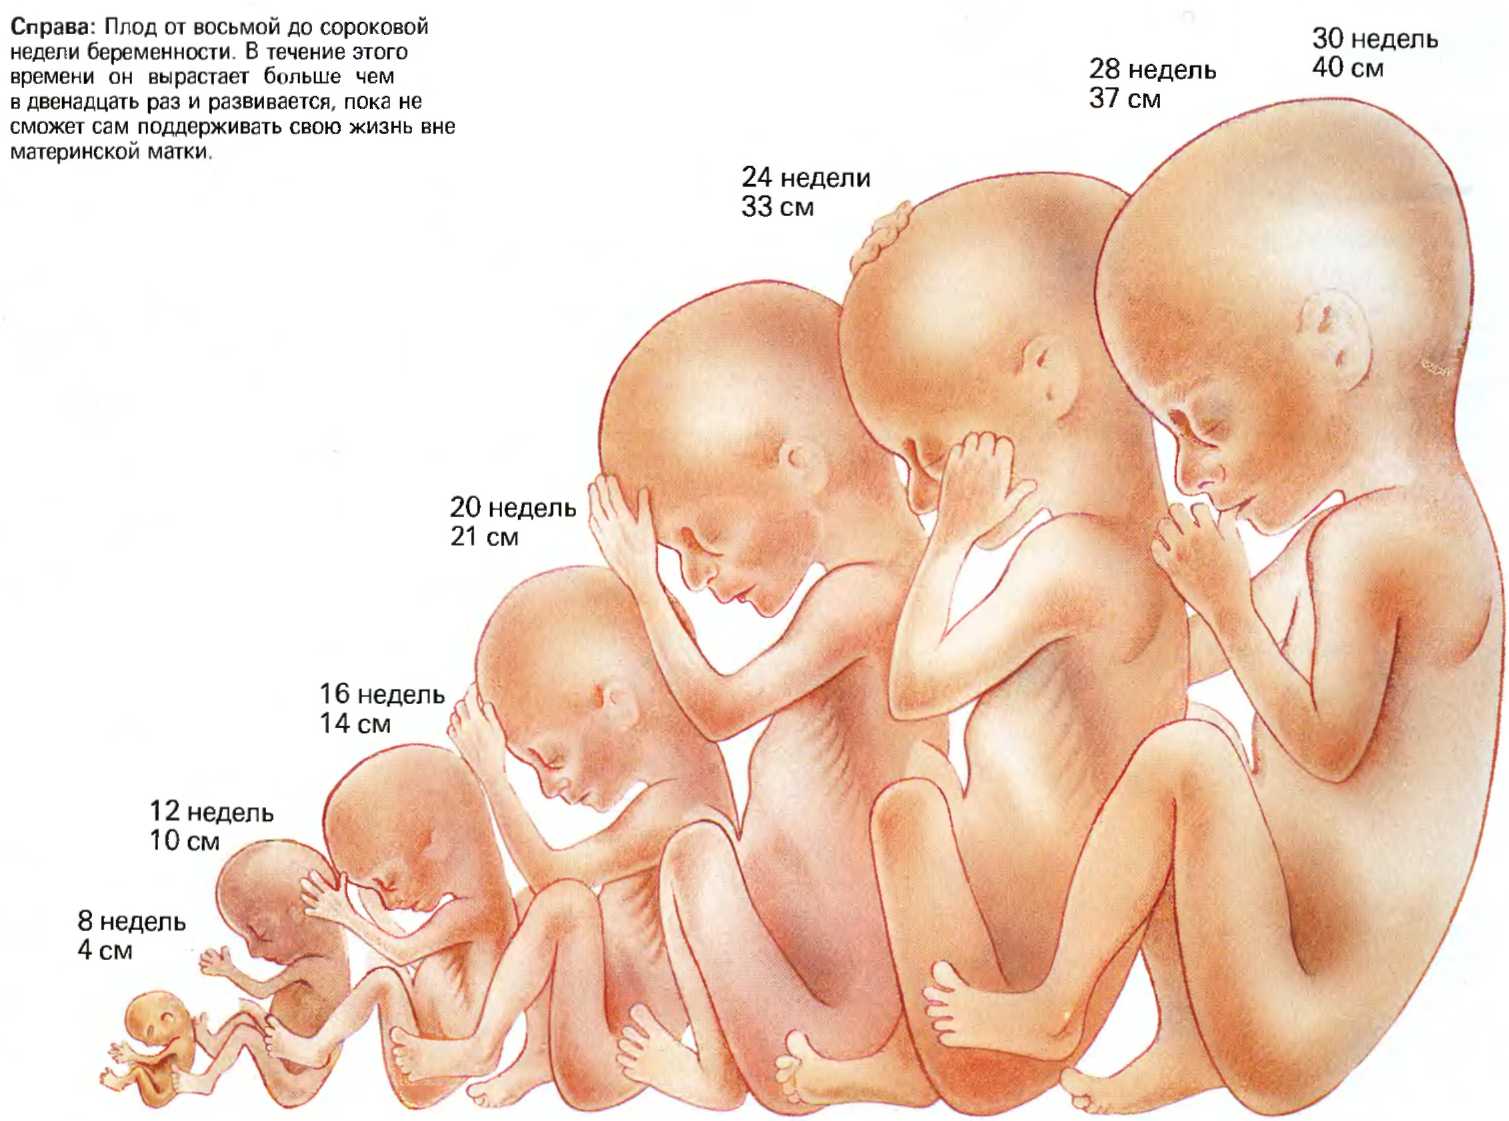 Первые шевеления при беременности: сроки, ощущения, норма. во сколько недель начинает шевелиться ребенок в первый раз при первой, второй, третьей беременности женщины?